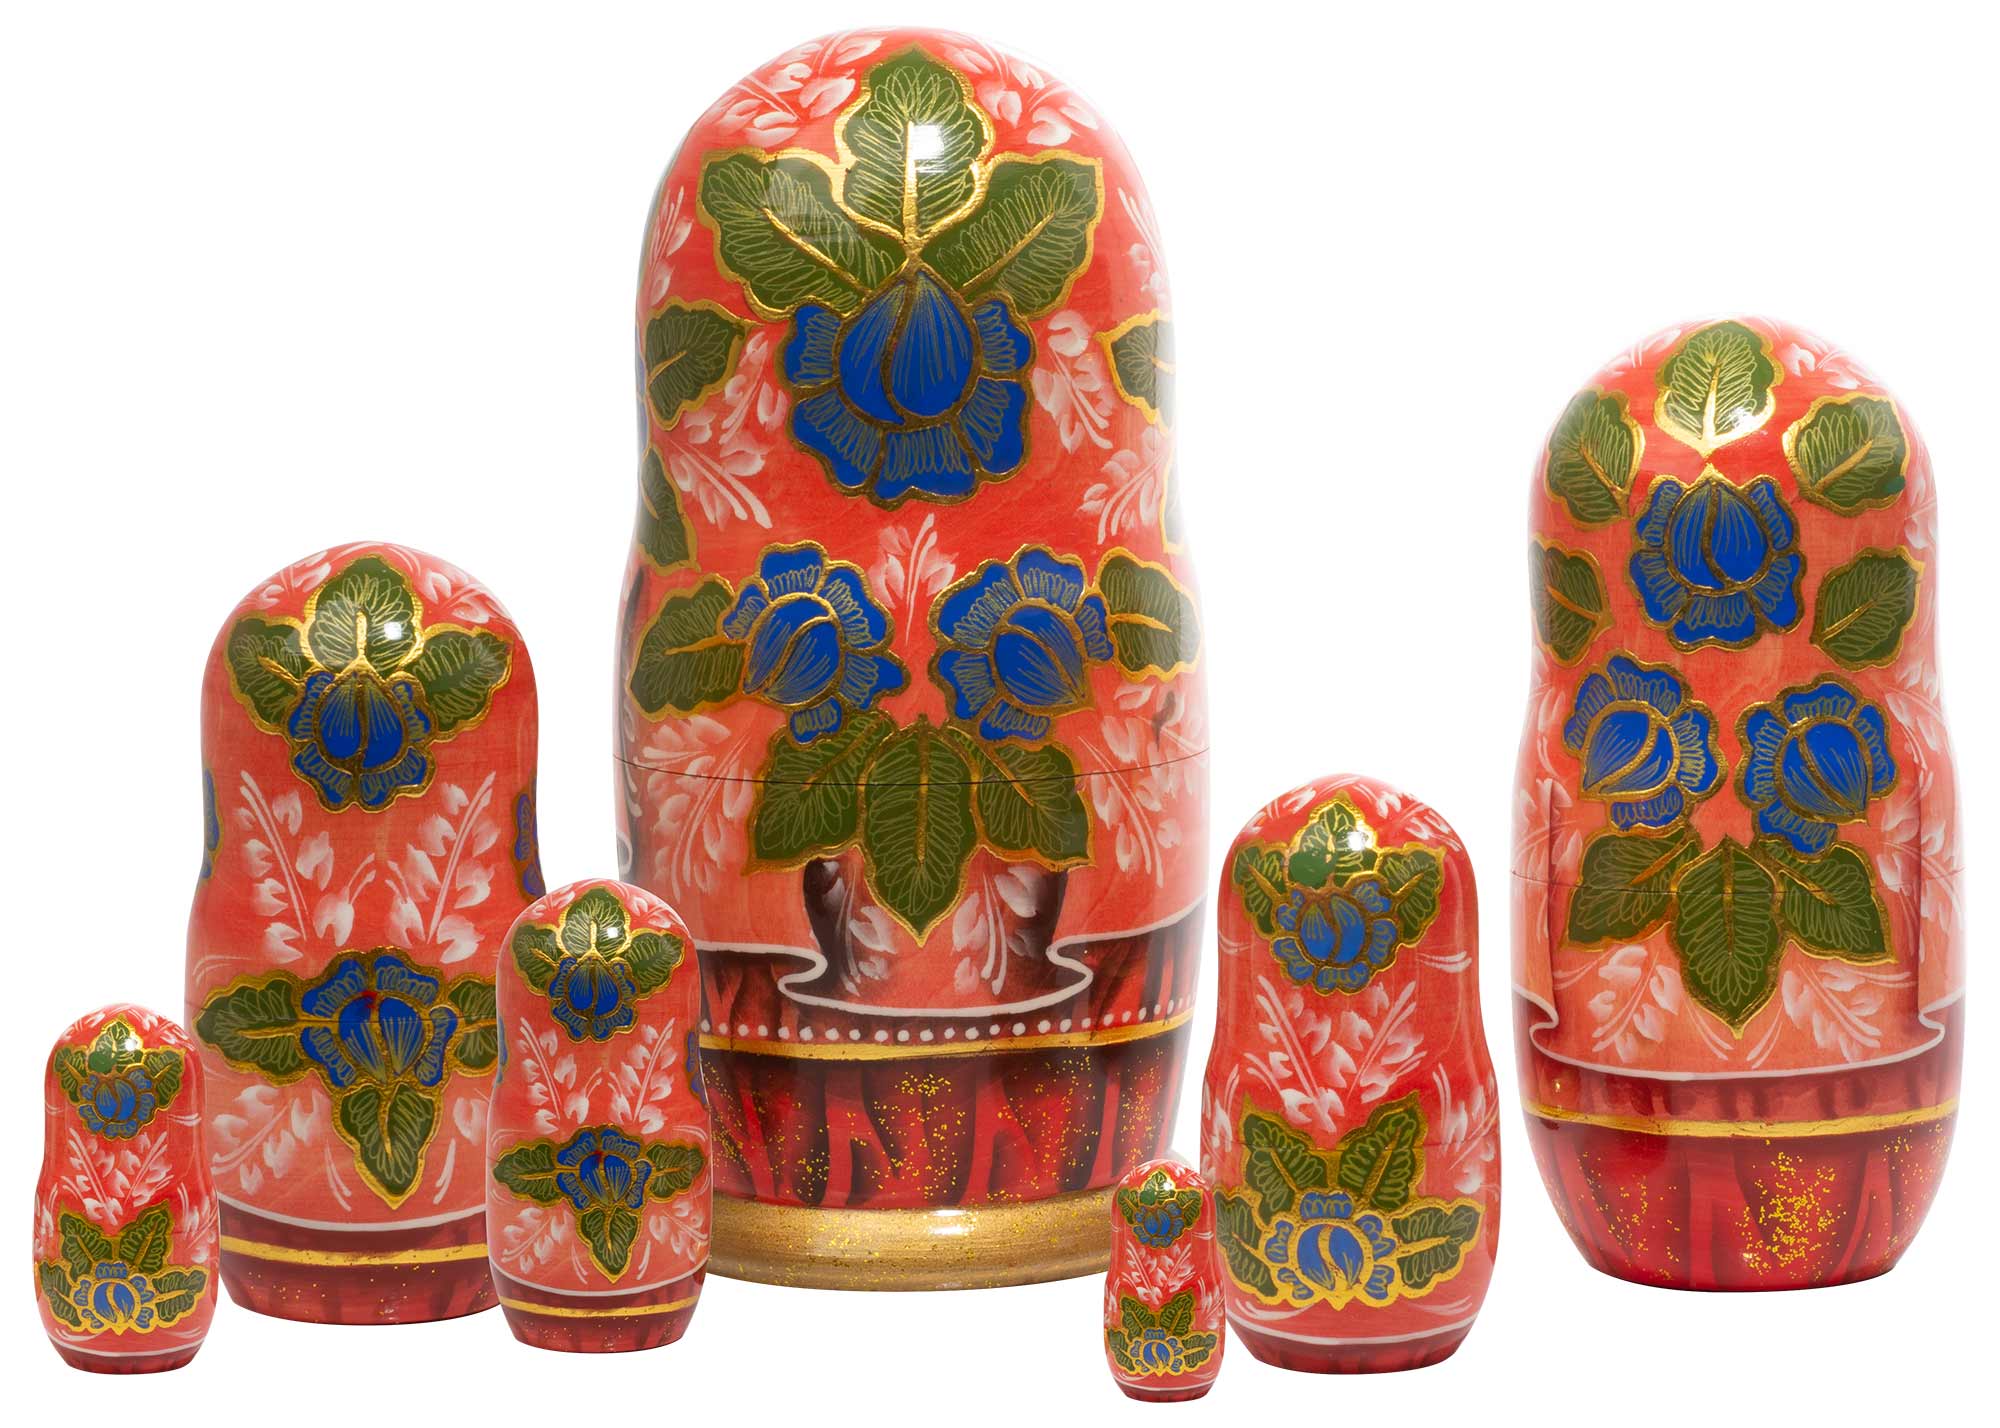 Buy Russian Beauty Matryoshka Doll 7pc./7" at GoldenCockerel.com